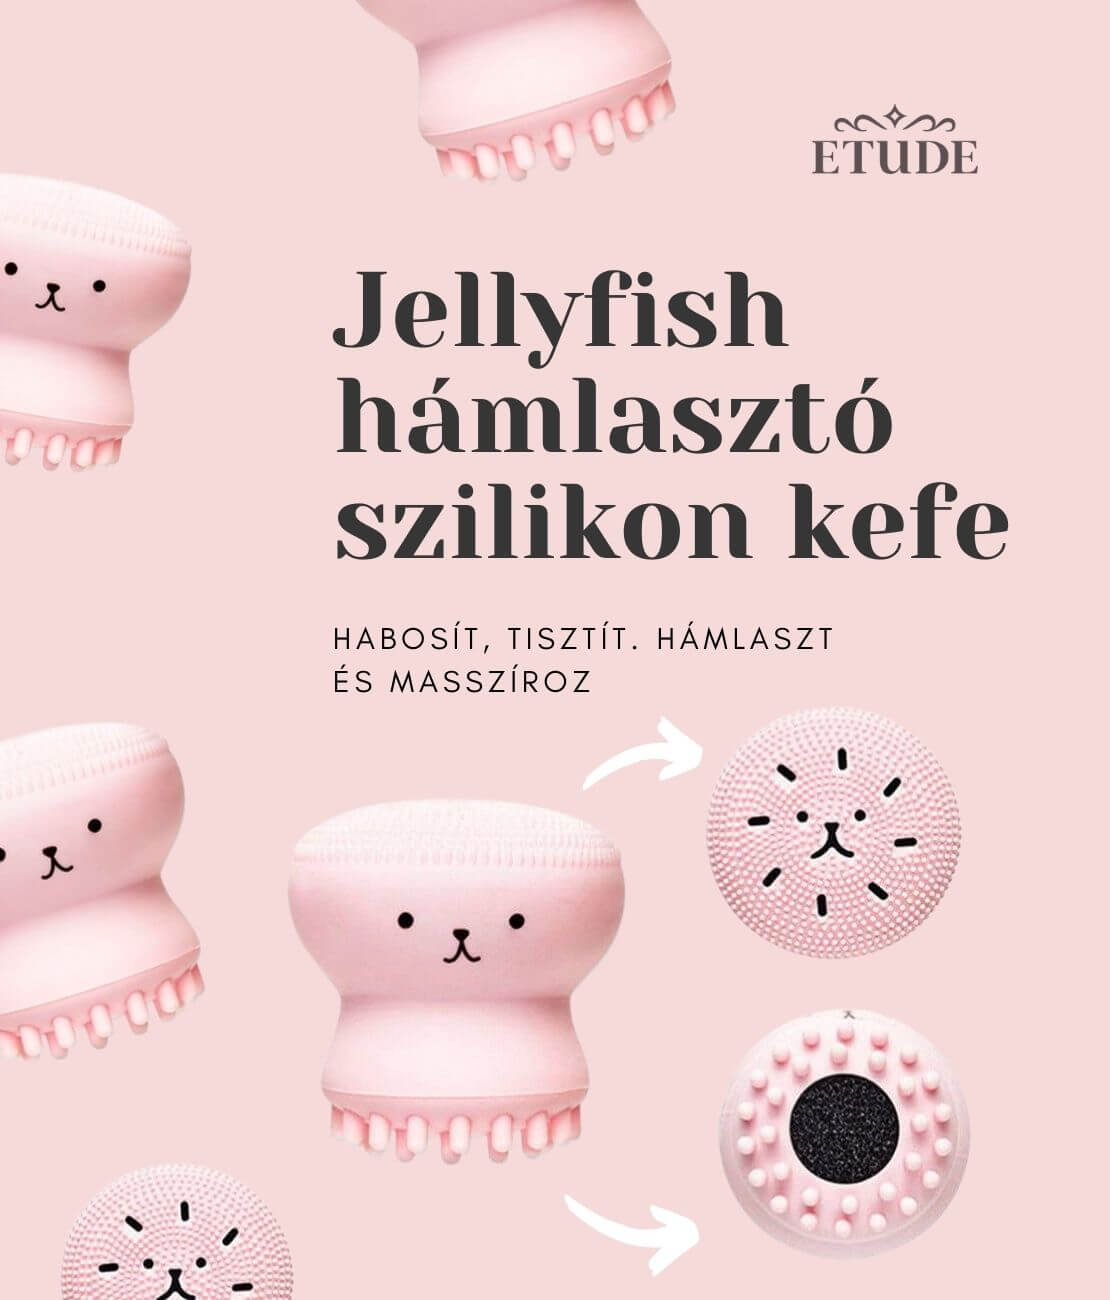 etude-house-jellyfish-hamlaszto-szilikonkefe